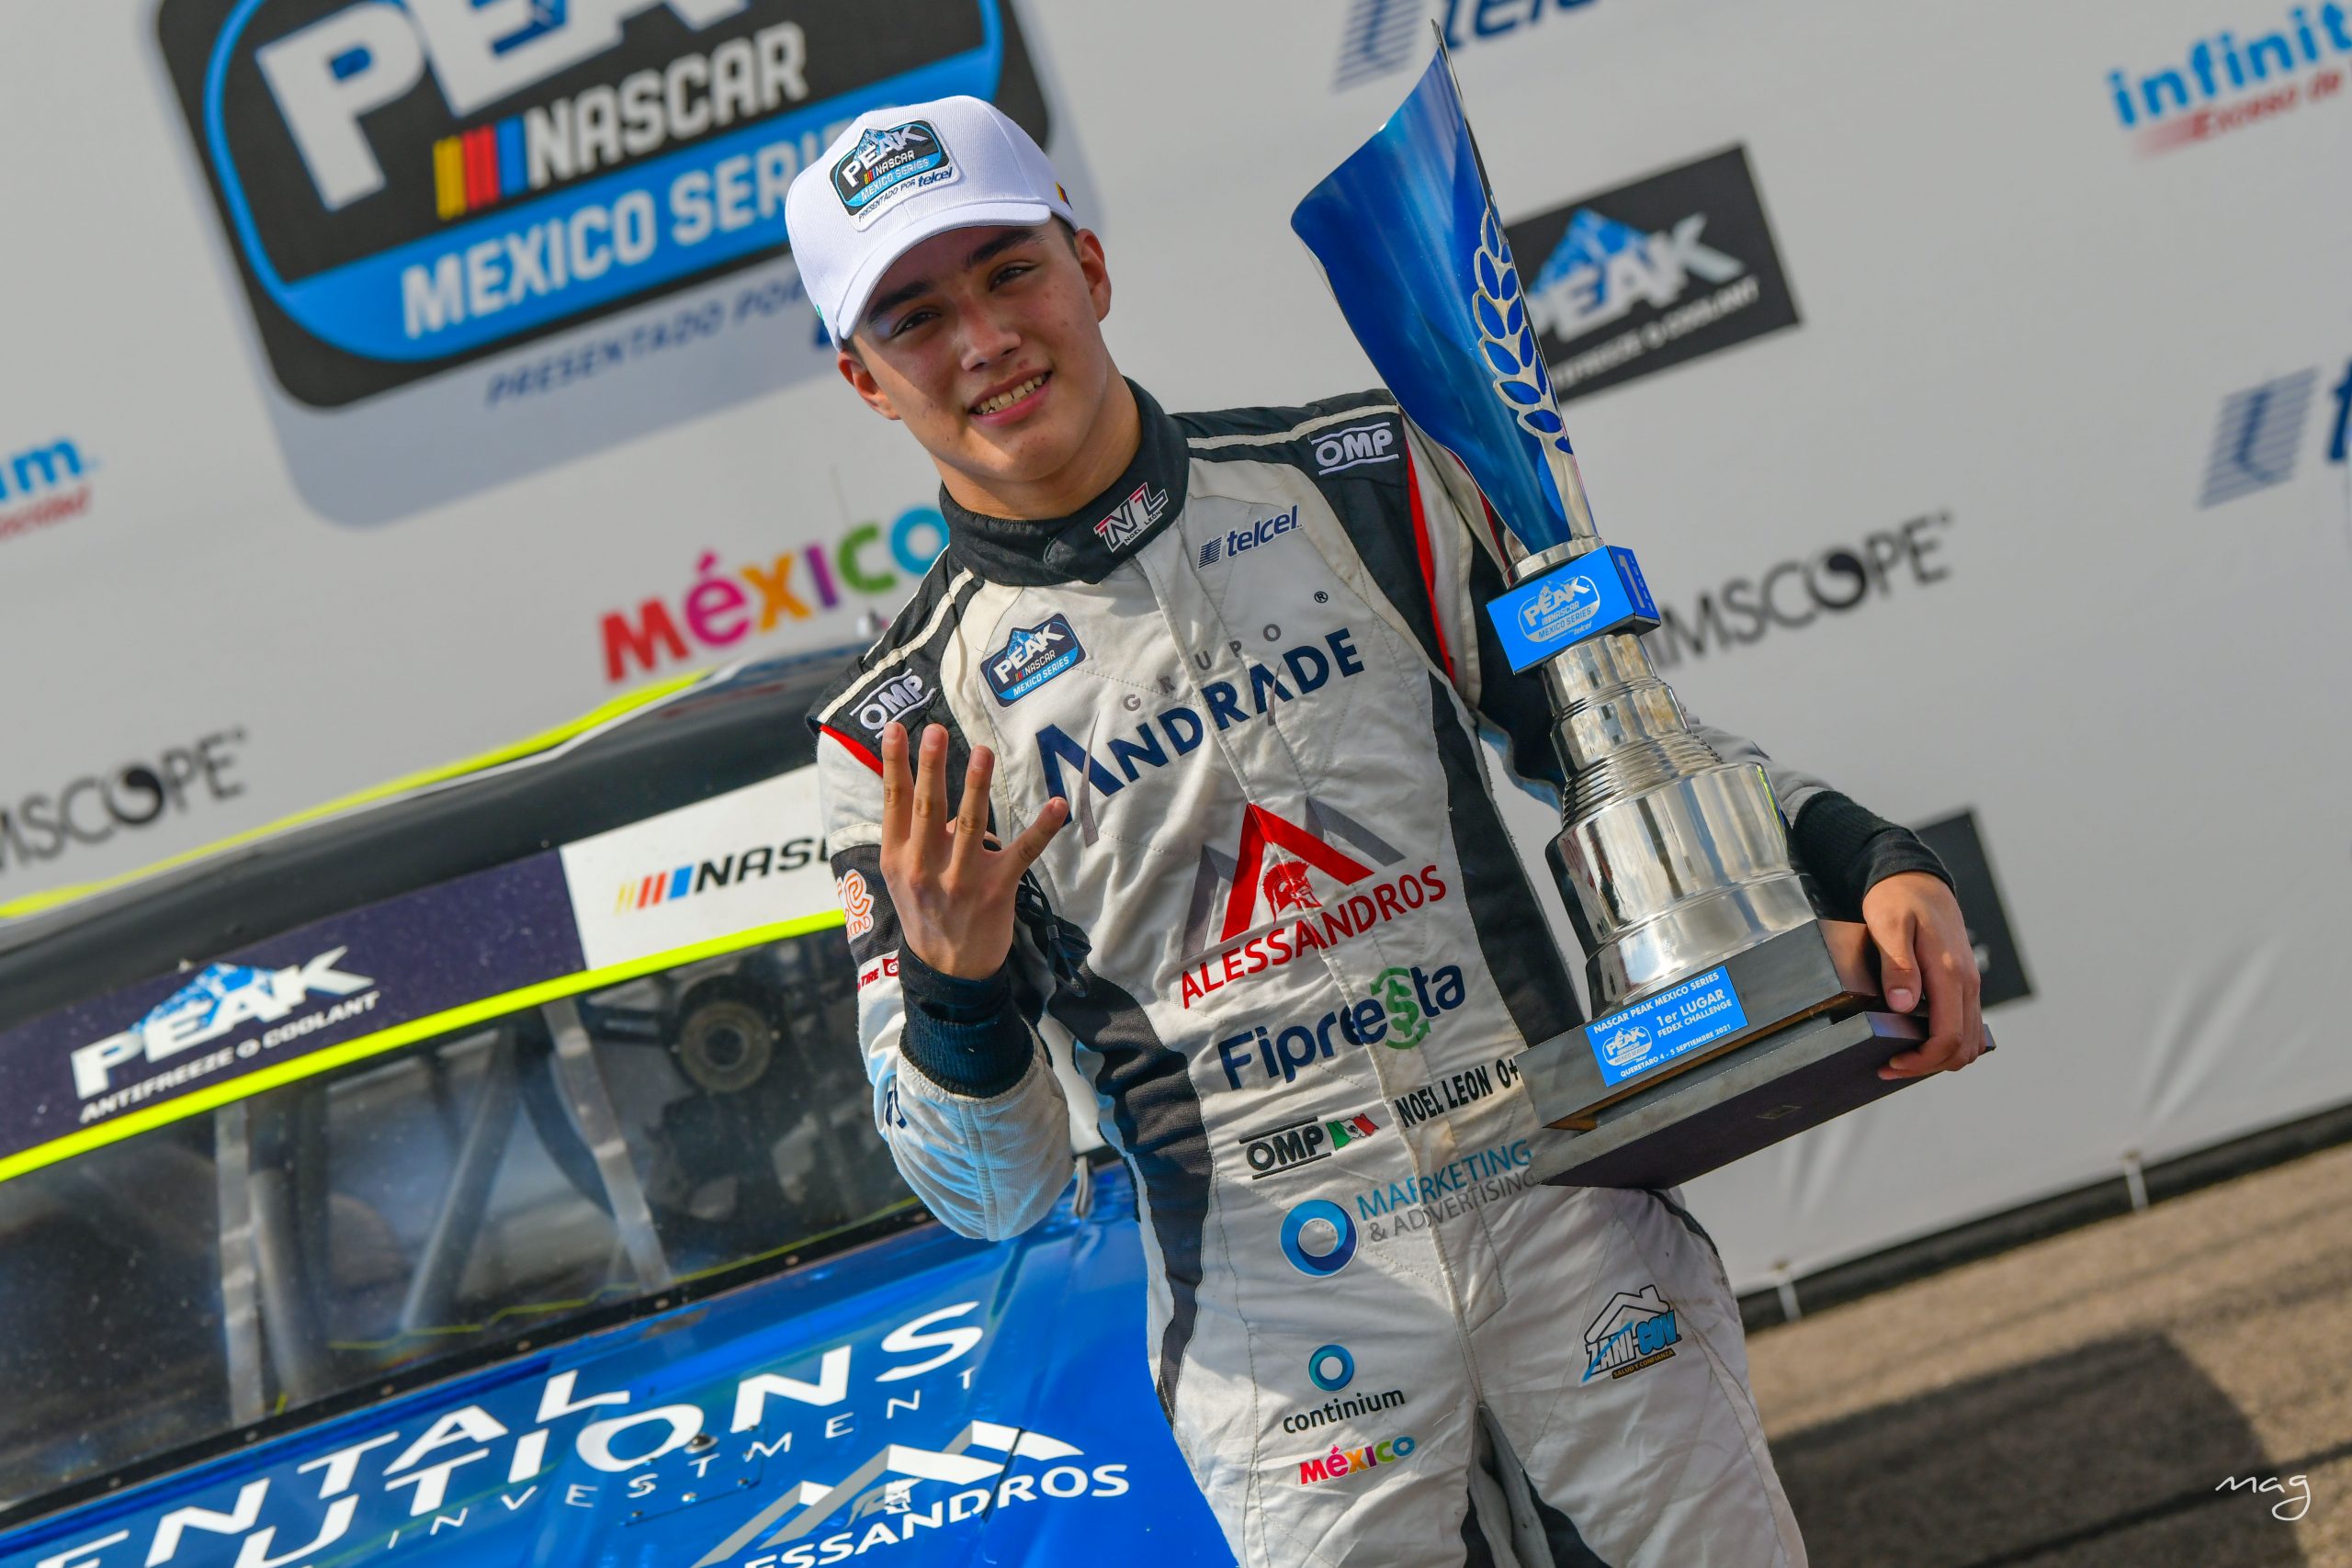 Alesandros Racing enfocado en el podio en Monterrey